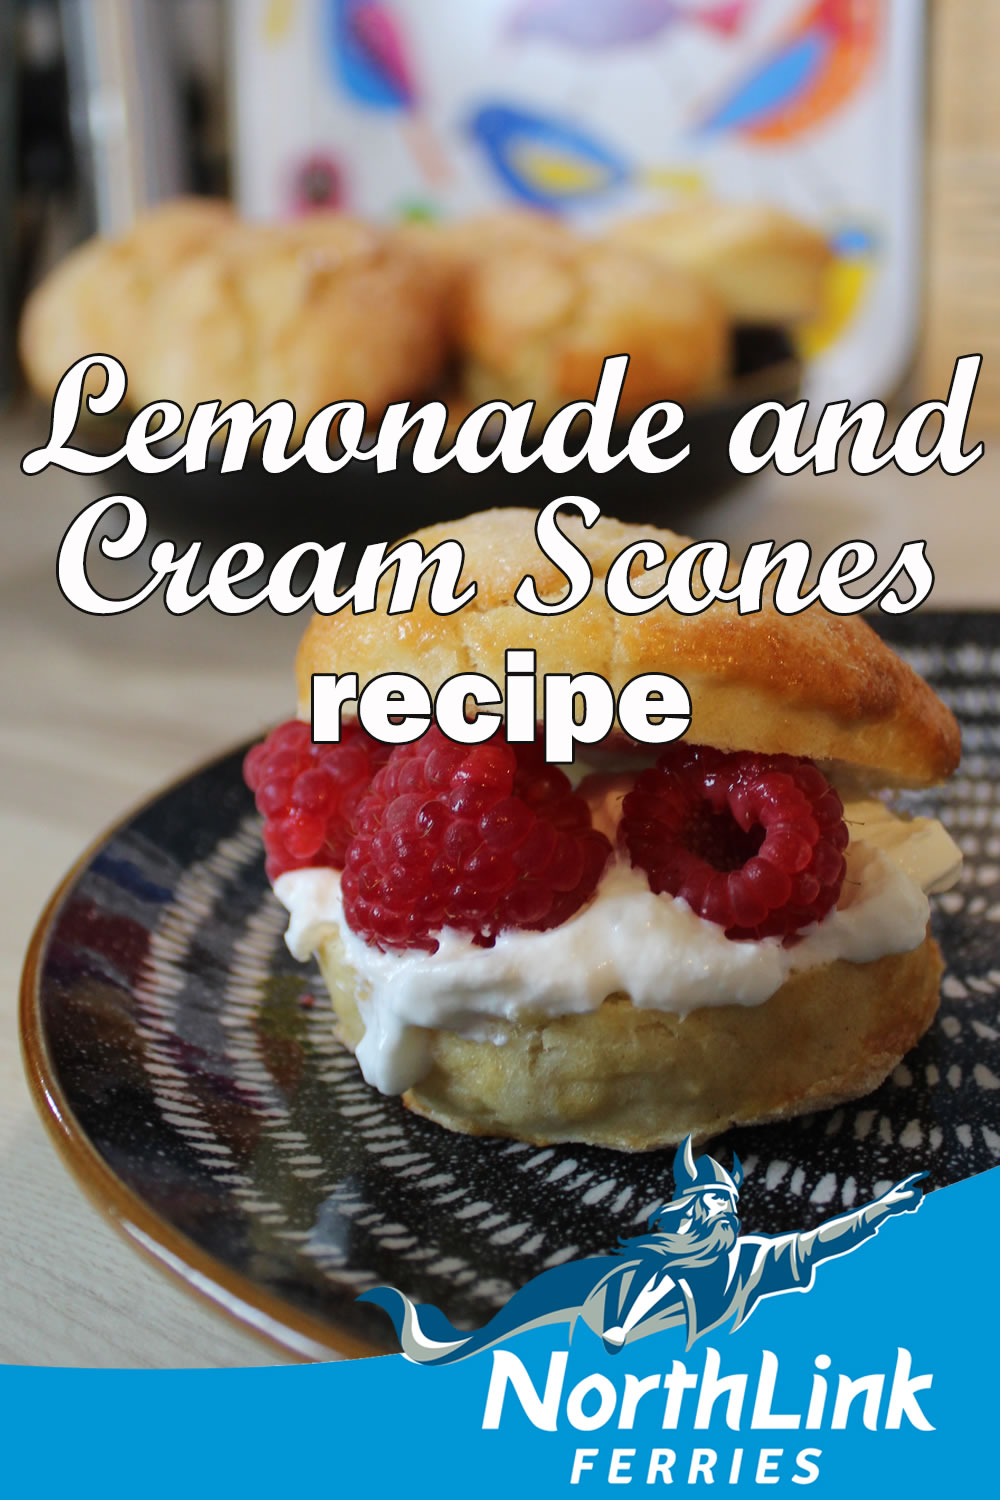 Lemonade and Cream Scones recipe